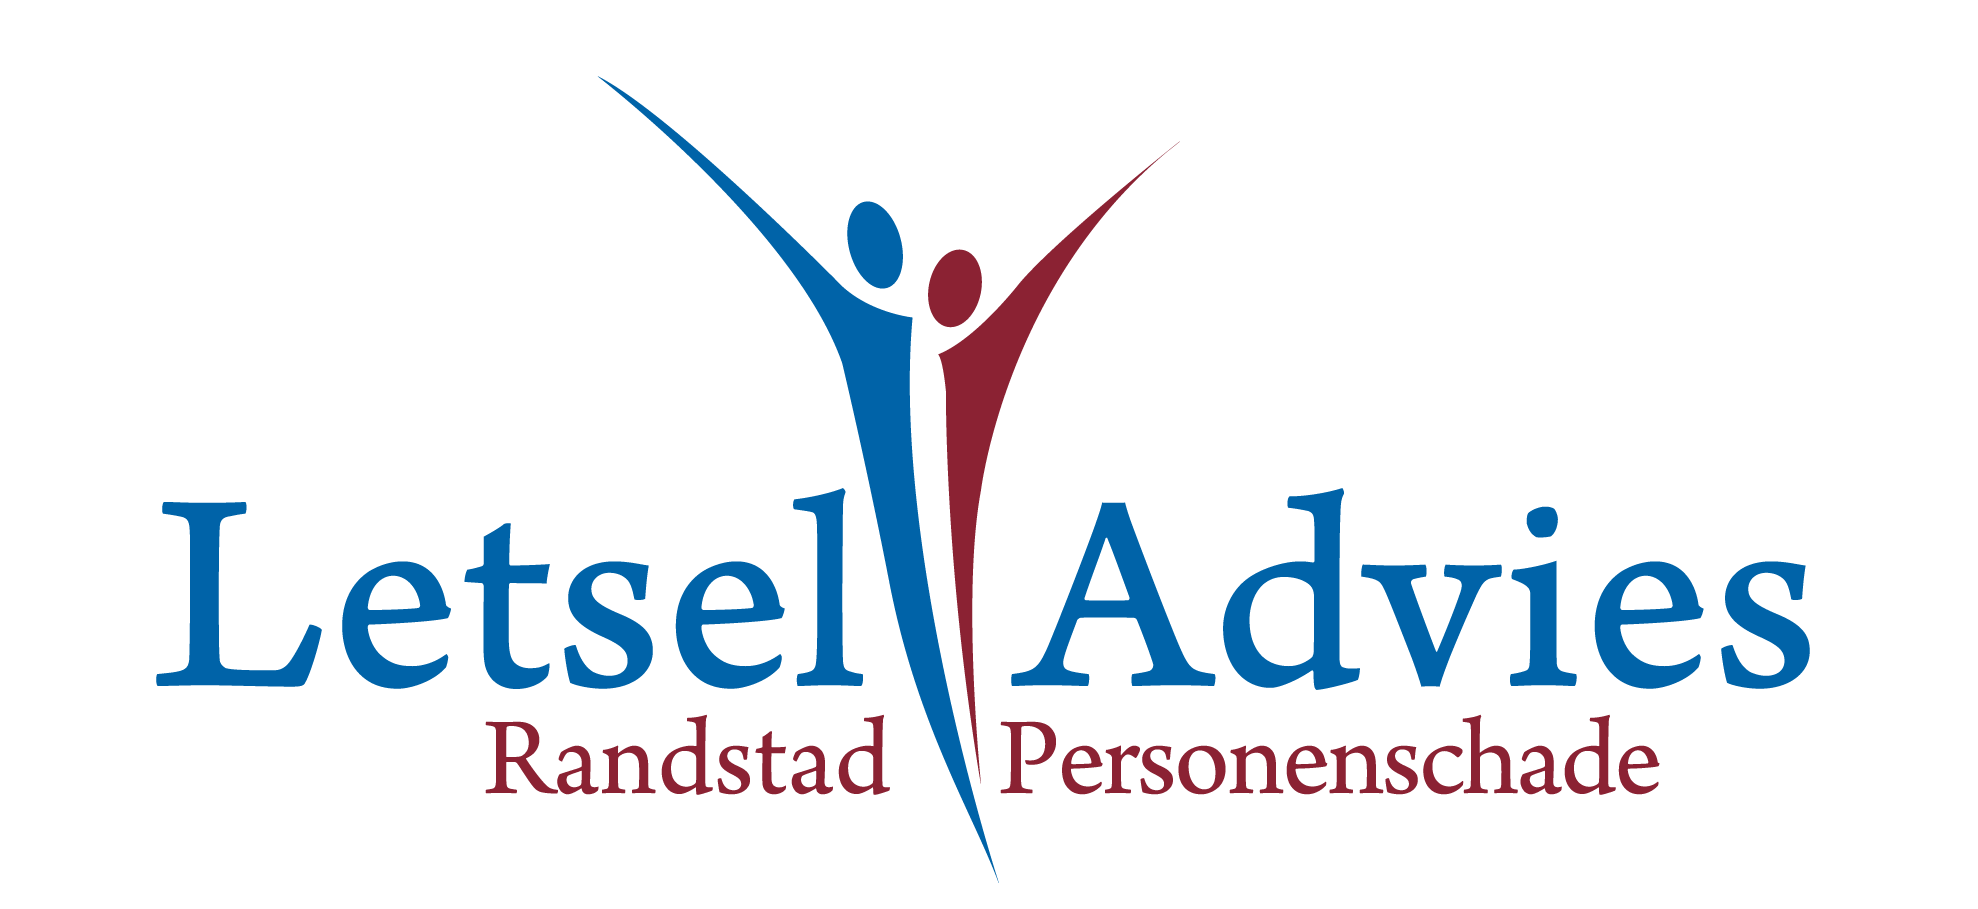 Randstad Personenschade B.V. | Letselschade & Advies. Logo